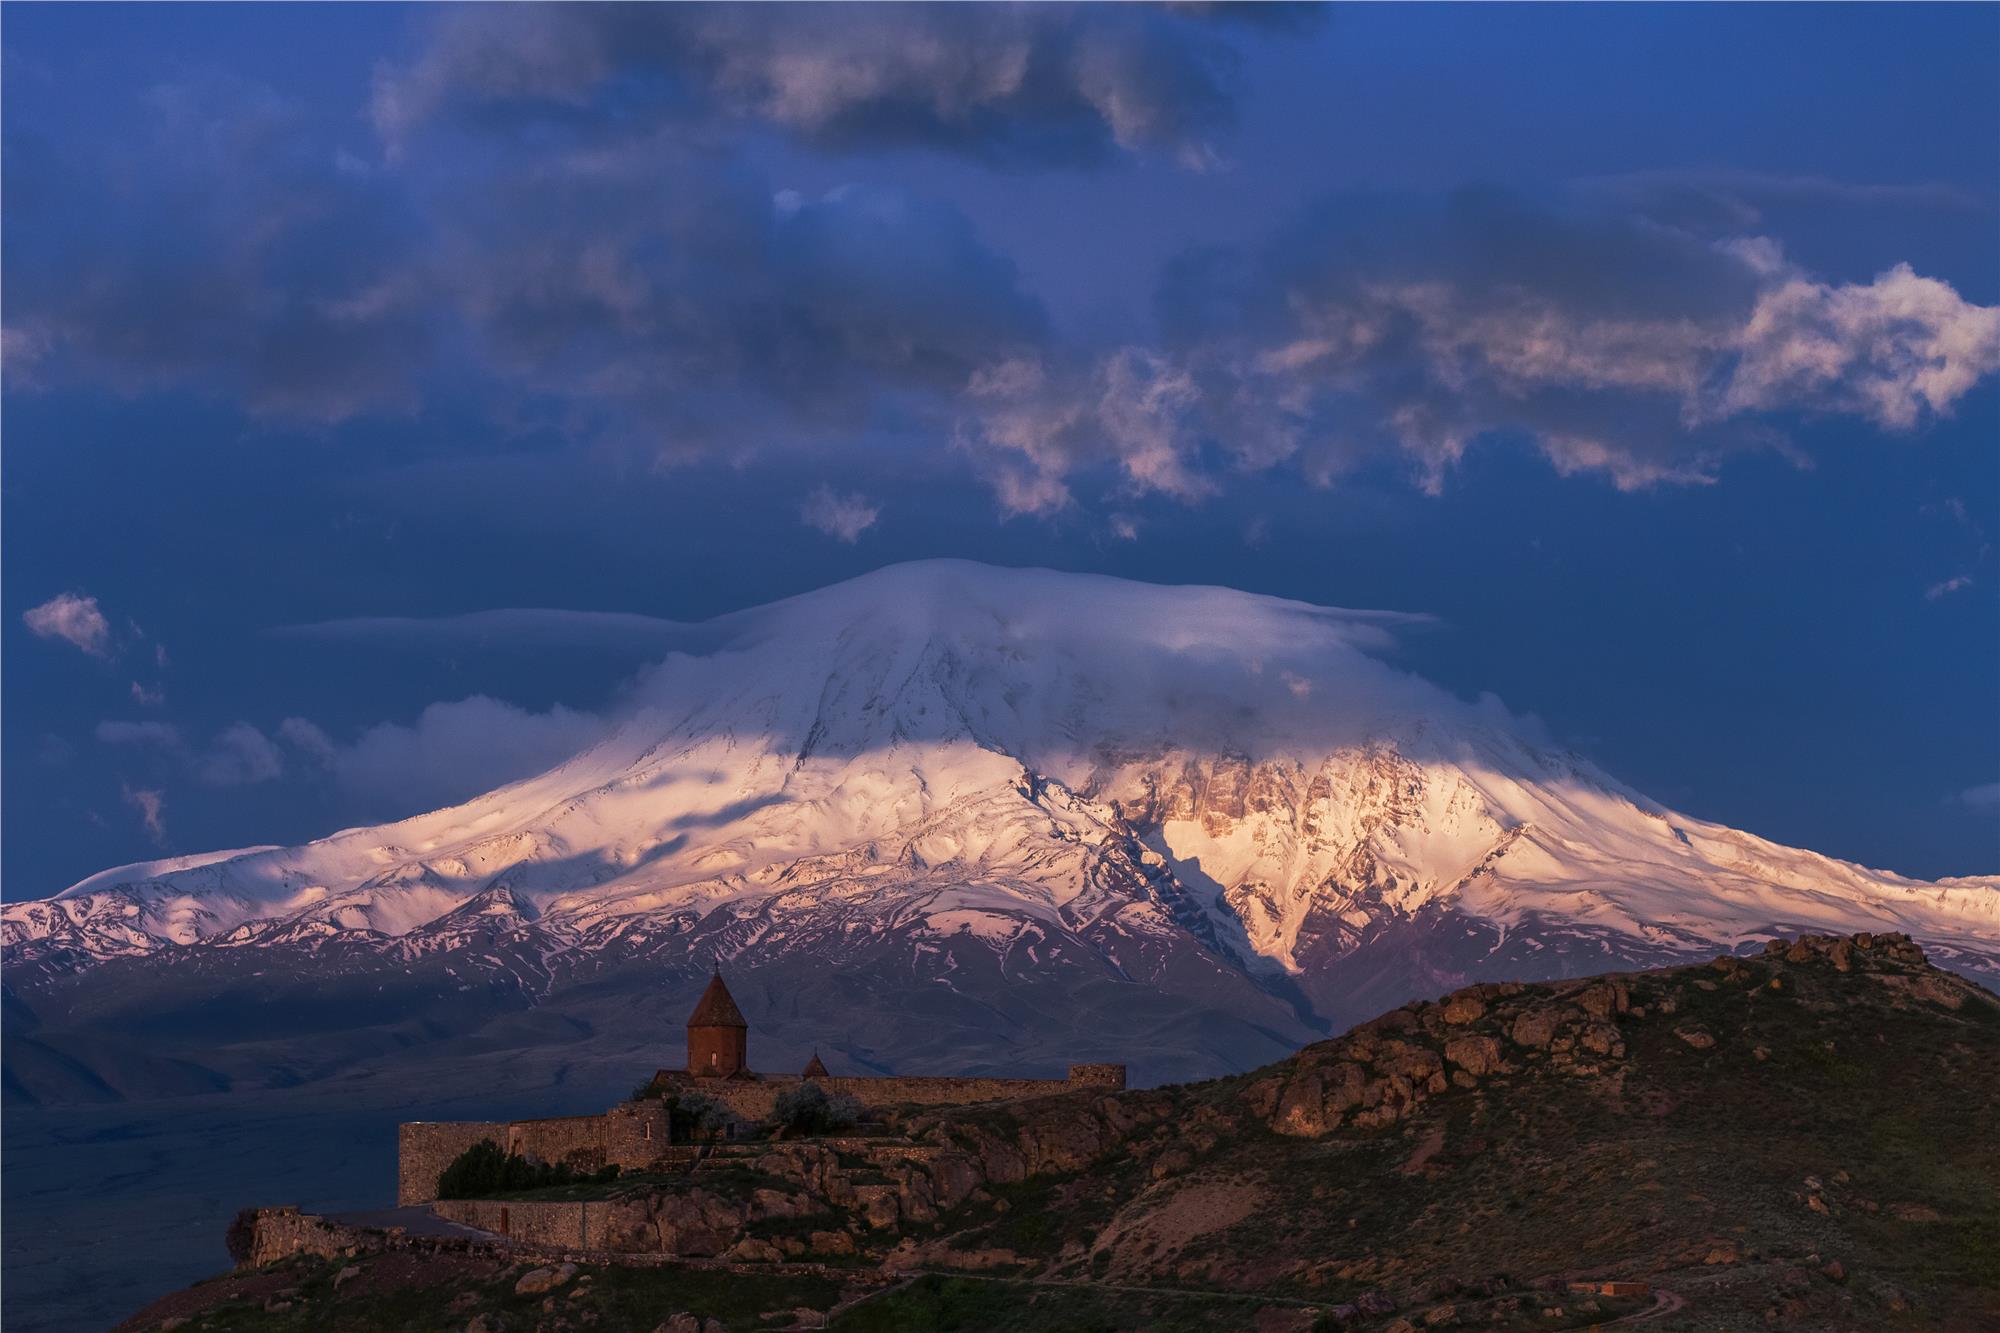 Ağrı Mountain (Mount Ararat) Photo Tours